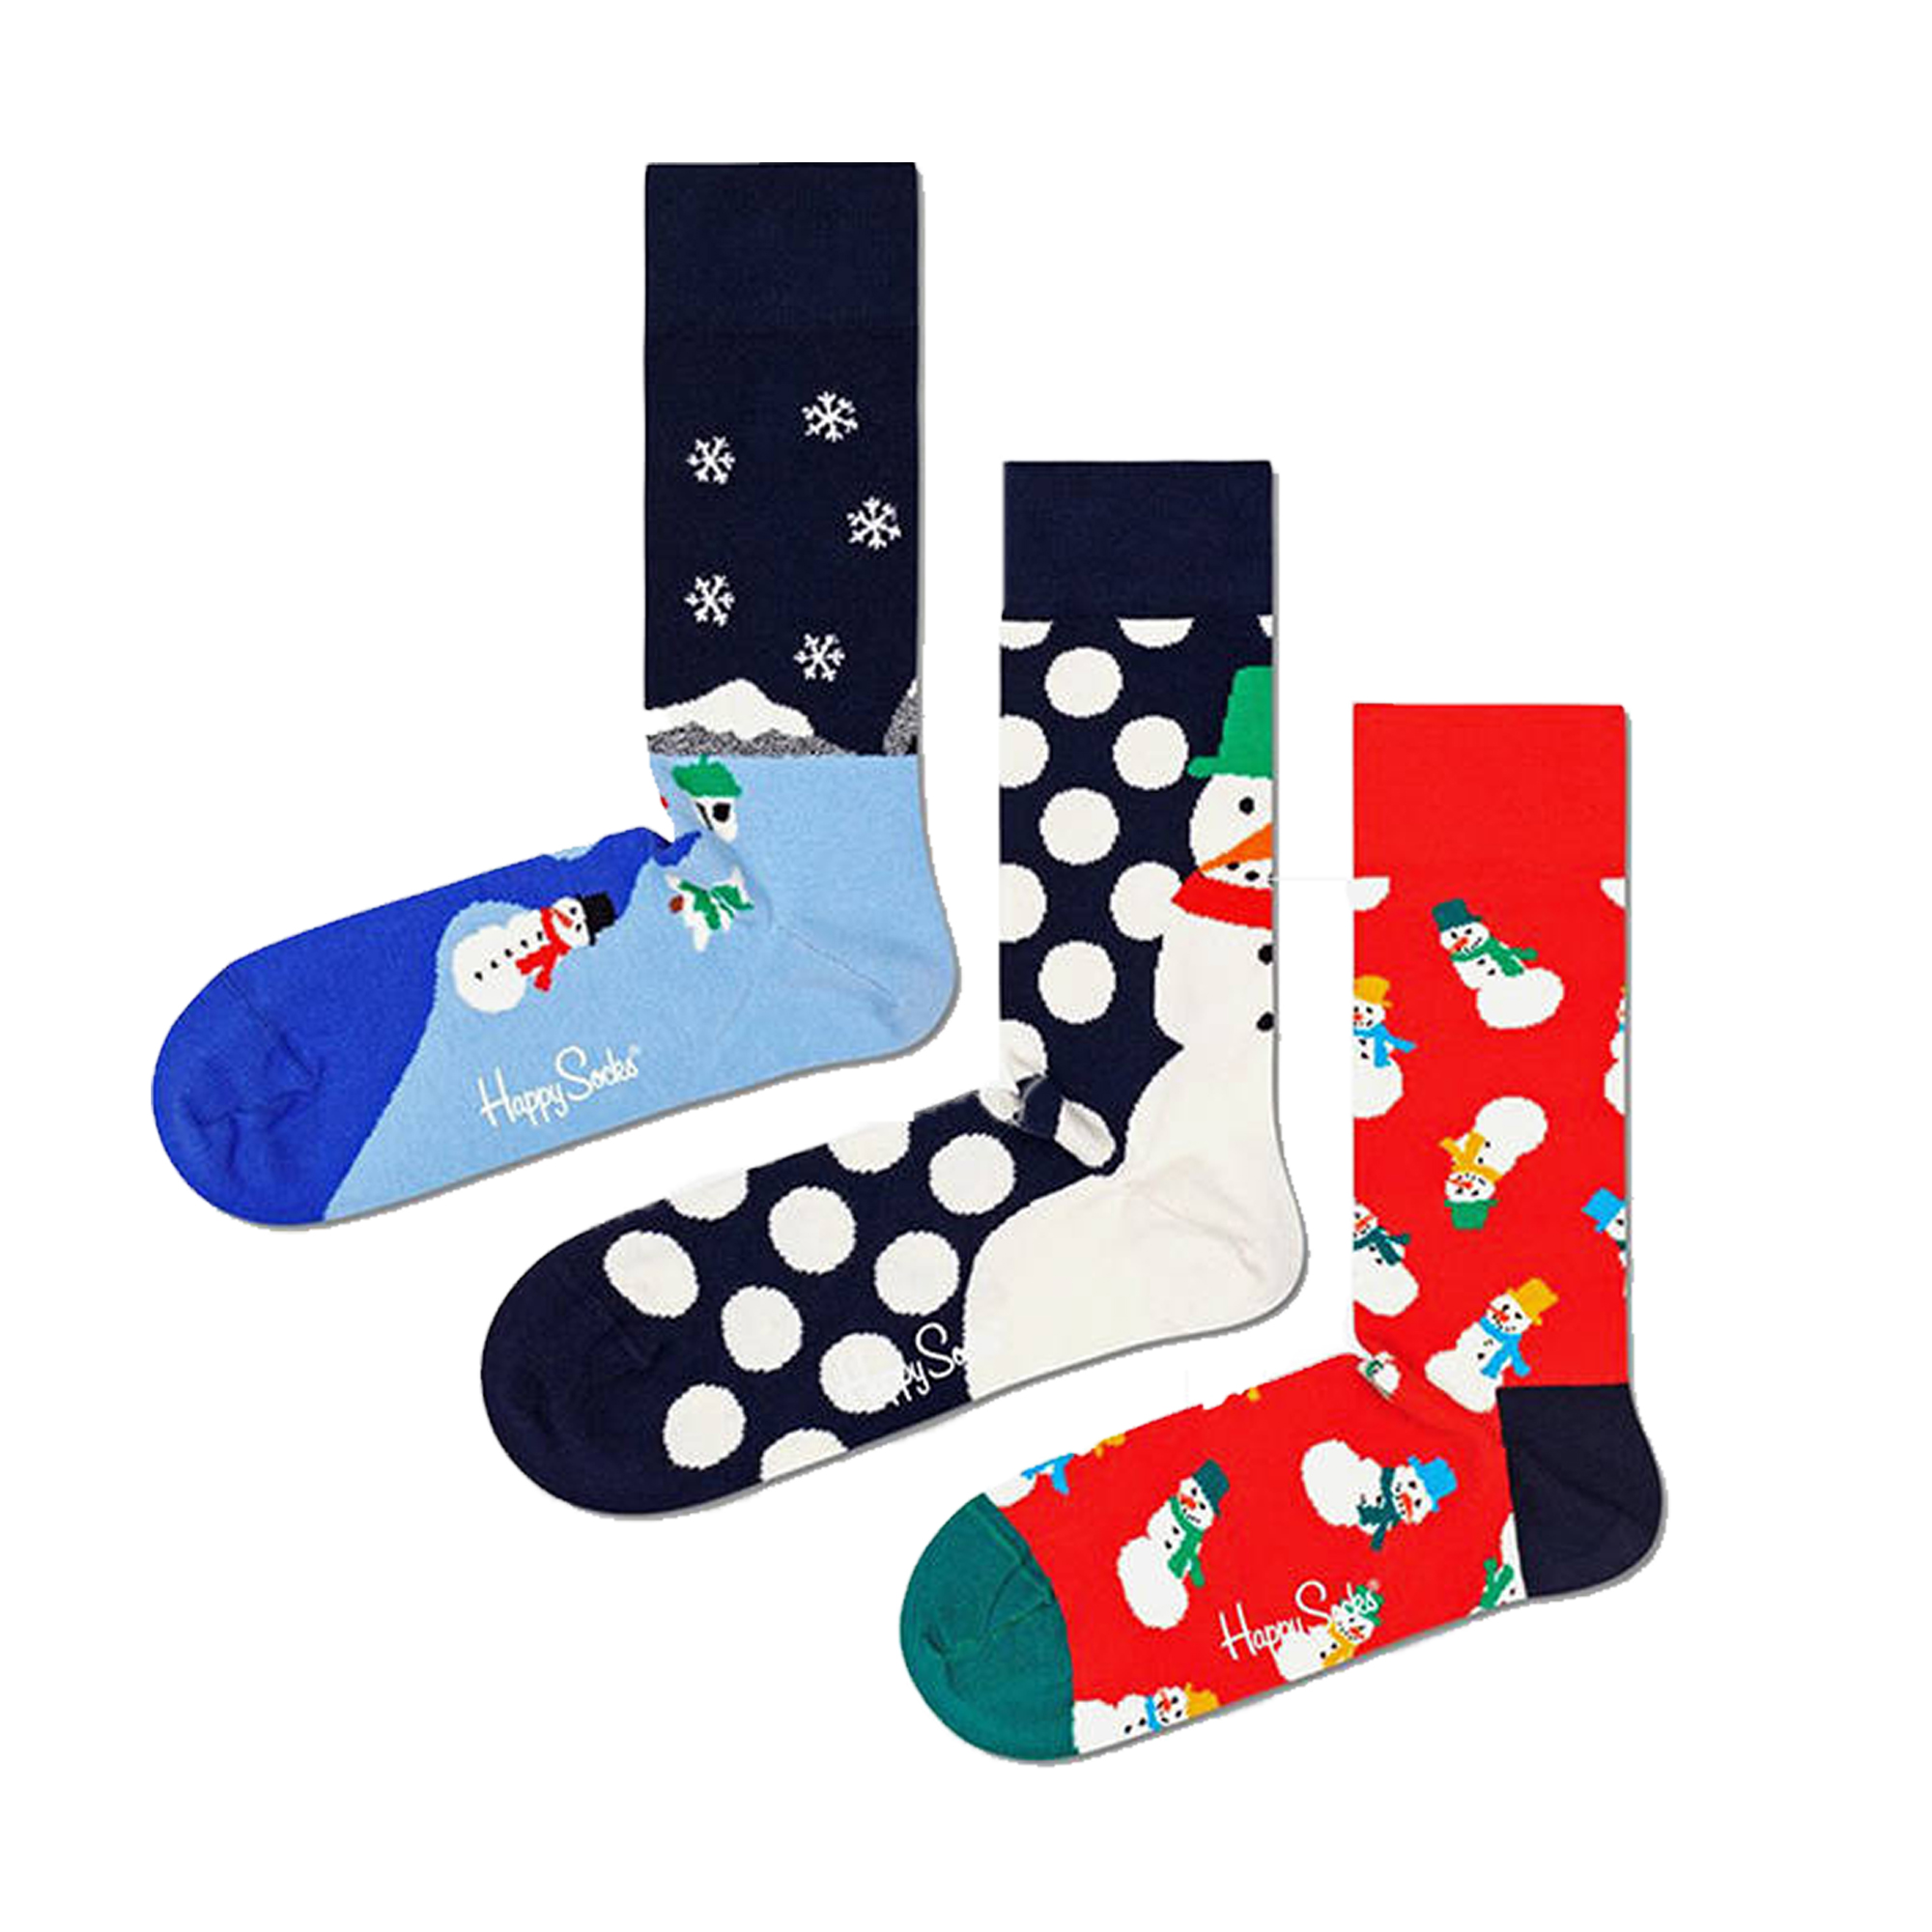 Pack 3 Pares De Meias Happy Socks Snow Gift Set - multicolor - 